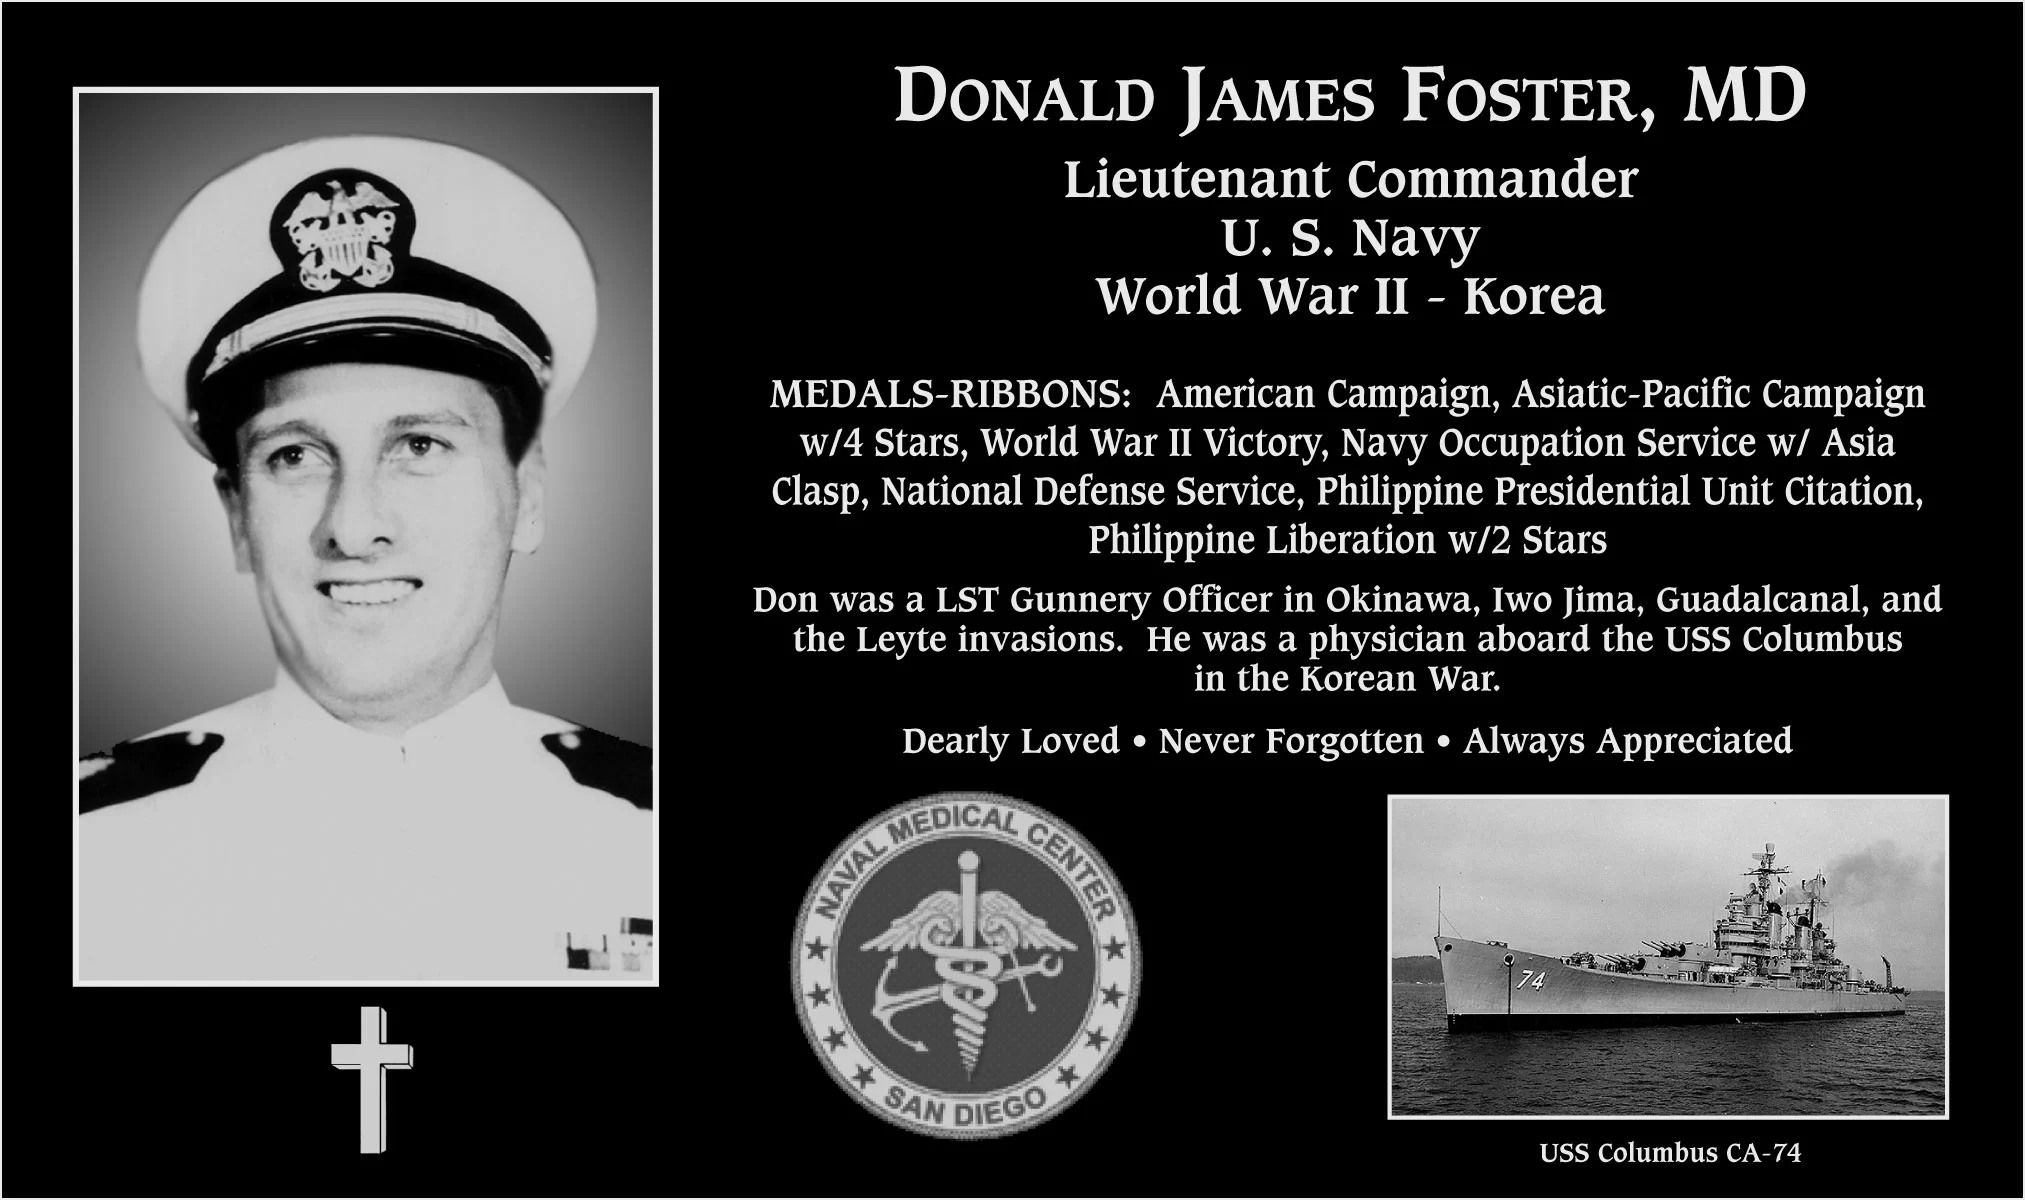 Donald James Foster